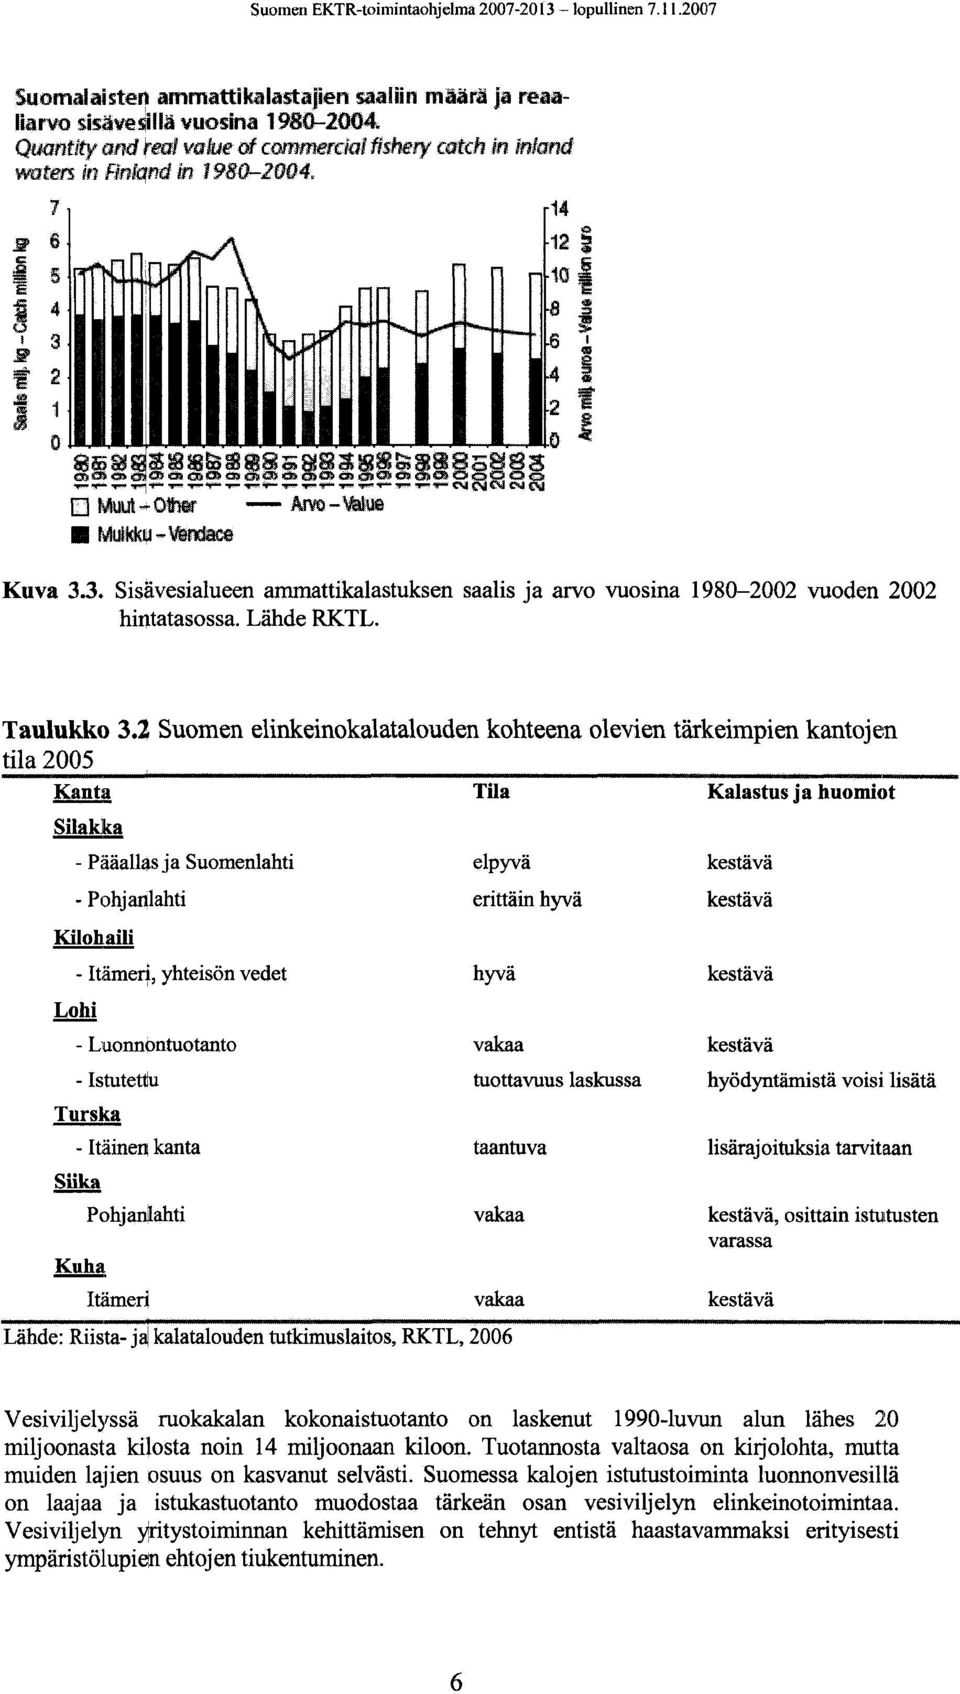 3. Sisävesialueen ammattikalastuksen saalis ja arvo vuosina 1980-2002 vuoden 2002 hintatasossa. Lähde RKTL. Taulukko 3.